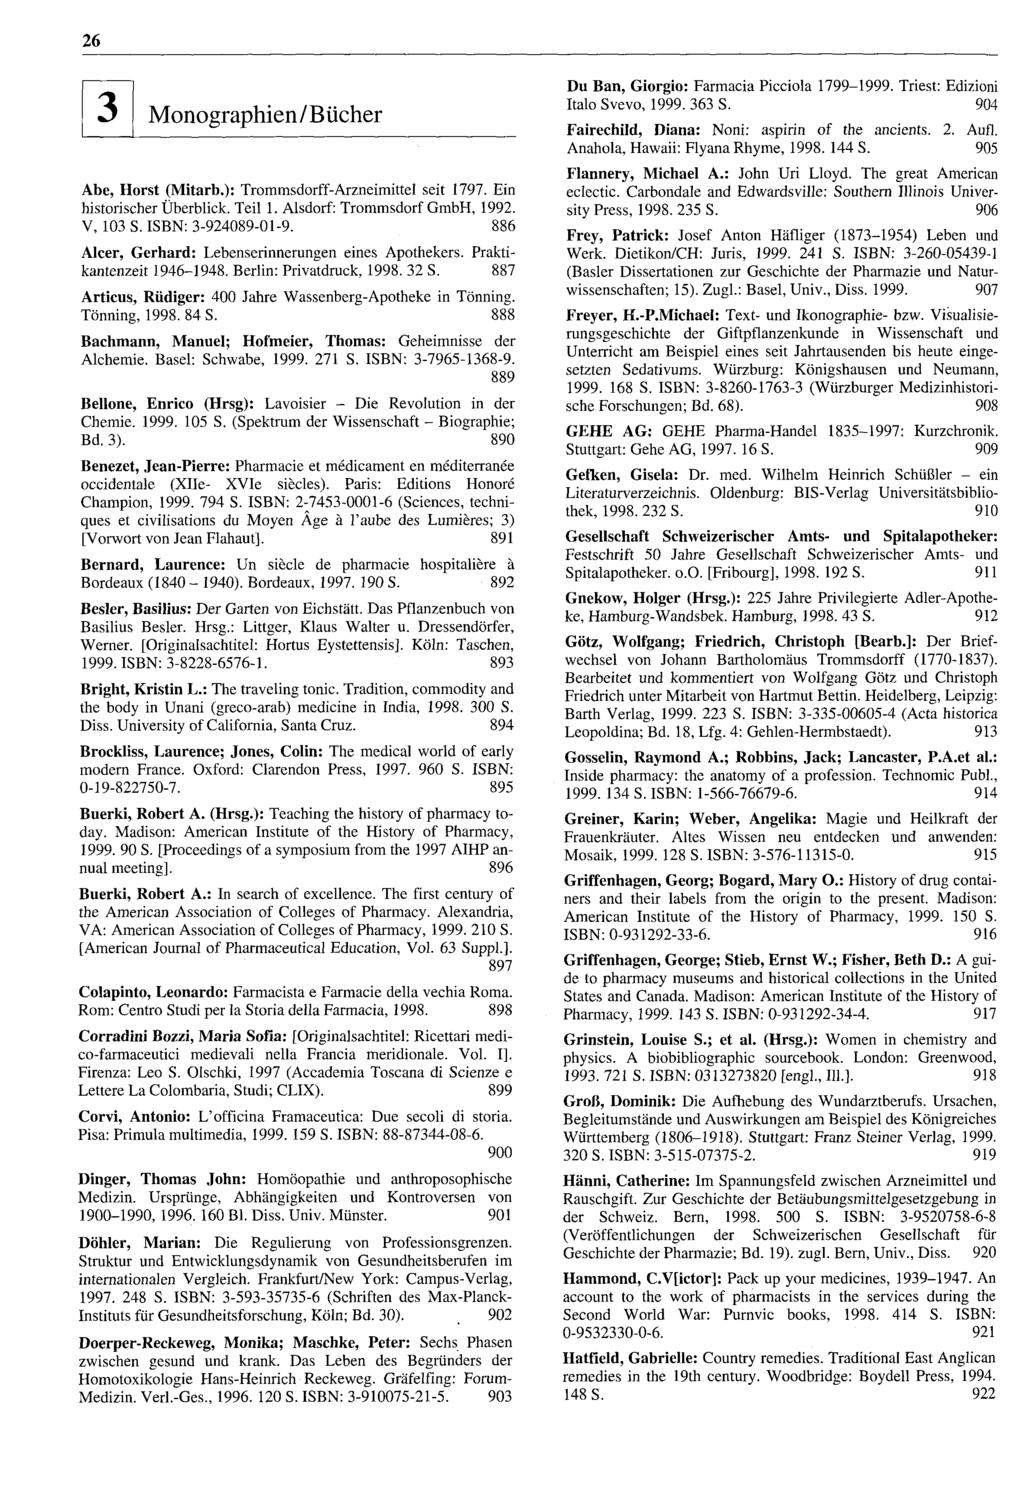 m 26 Monographlen/Bücher Abe, Horst (Mitarb.): Trommsdorff-Arzneimittel seit 1797. Ein historischer Überblick. Teil 1. Alsdorf: Trommsdorf GmbH, 1992. V, 103 S. ISBN: 3-924089-01-9.